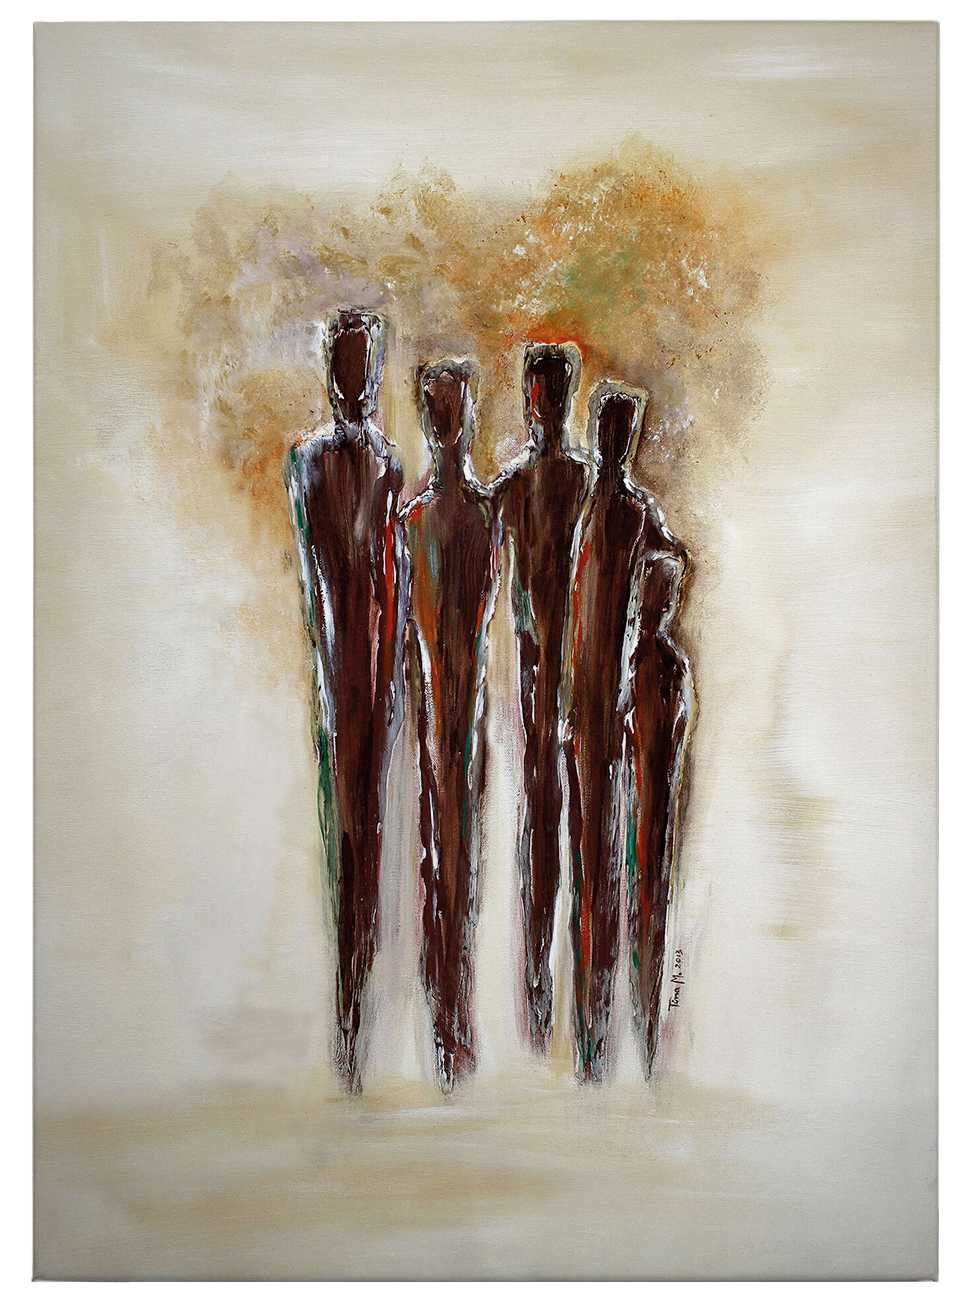             Tableau sur toile Art Tina Melz "Together 02", portrait - 0,50 m x 0,70 m
        